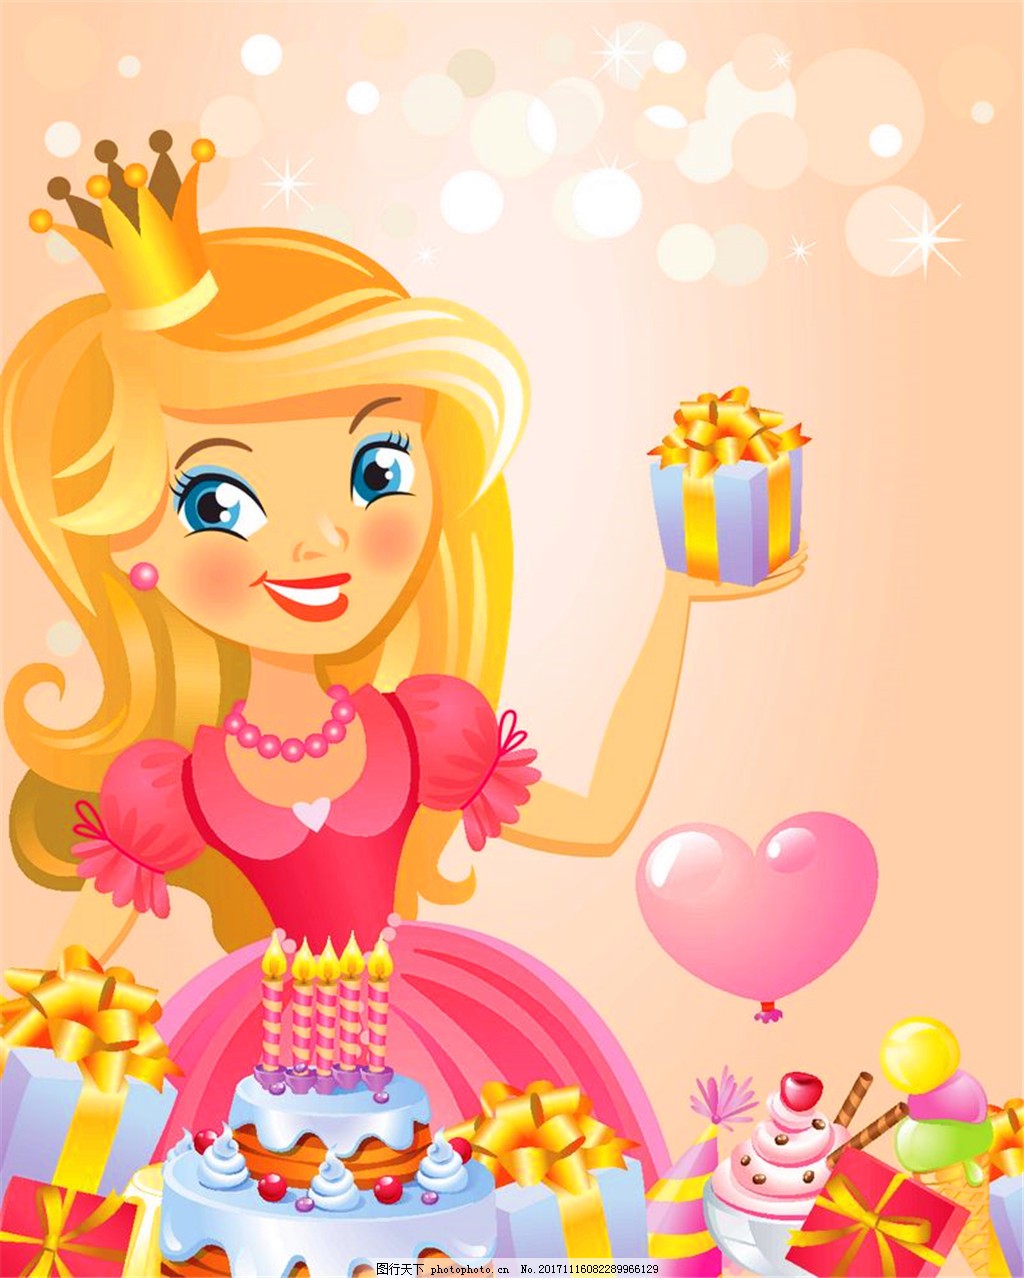 白雪公主与七个小矮人生日蛋糕装饰摆件情景烘焙摆件公仔造景玩具-阿里巴巴